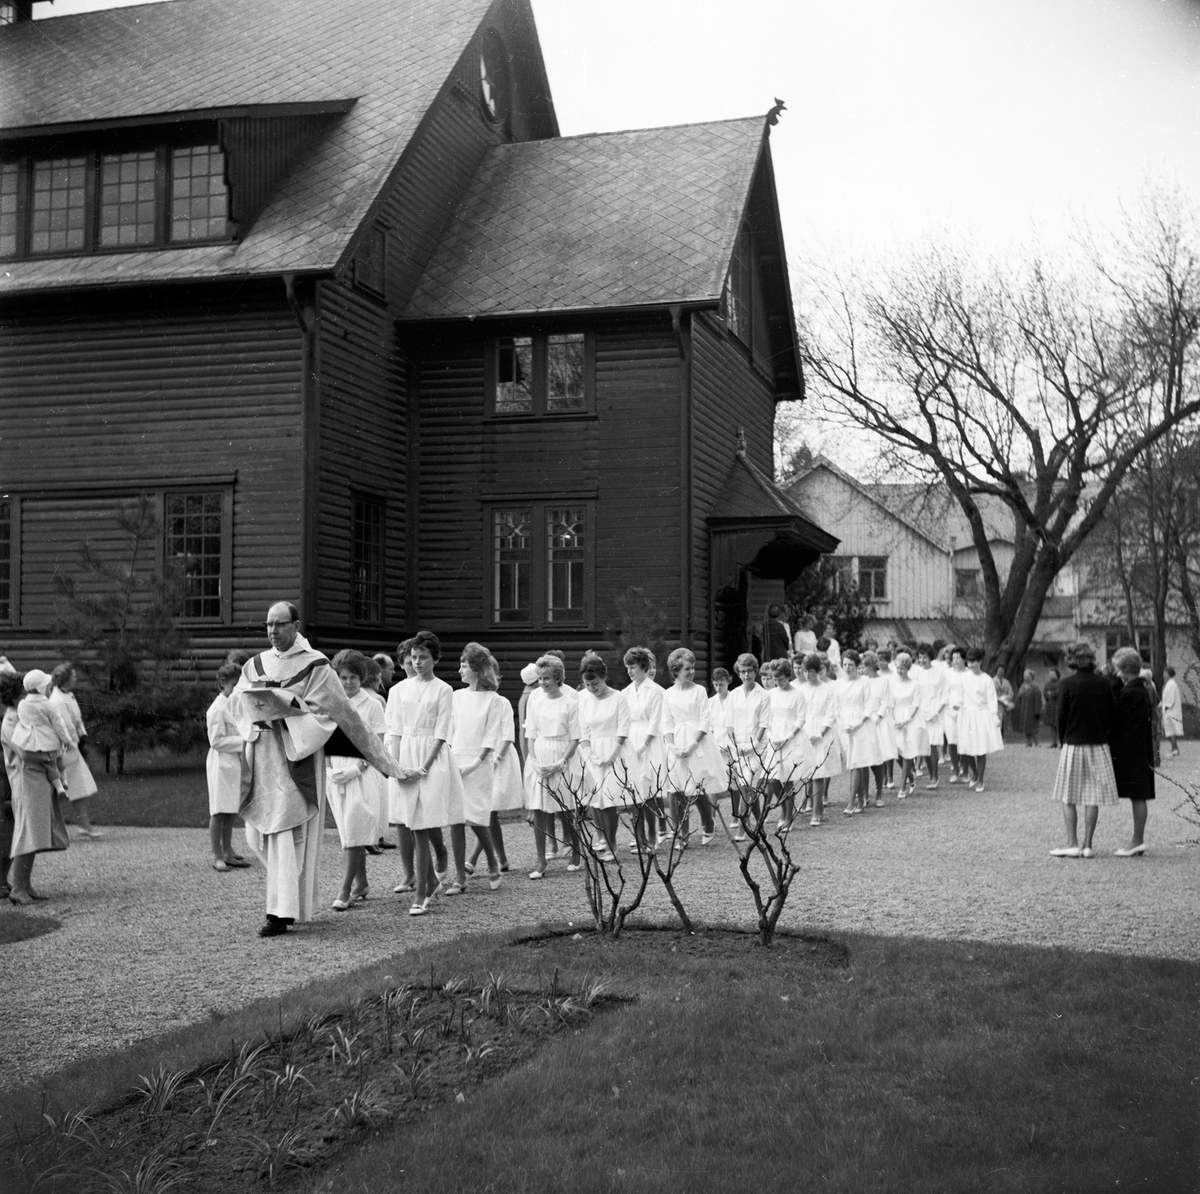 Konfirmation i Huskvarna kyrka. Flickorna är klädda i vita knälånga klänningar, vita skor och vita vantar.